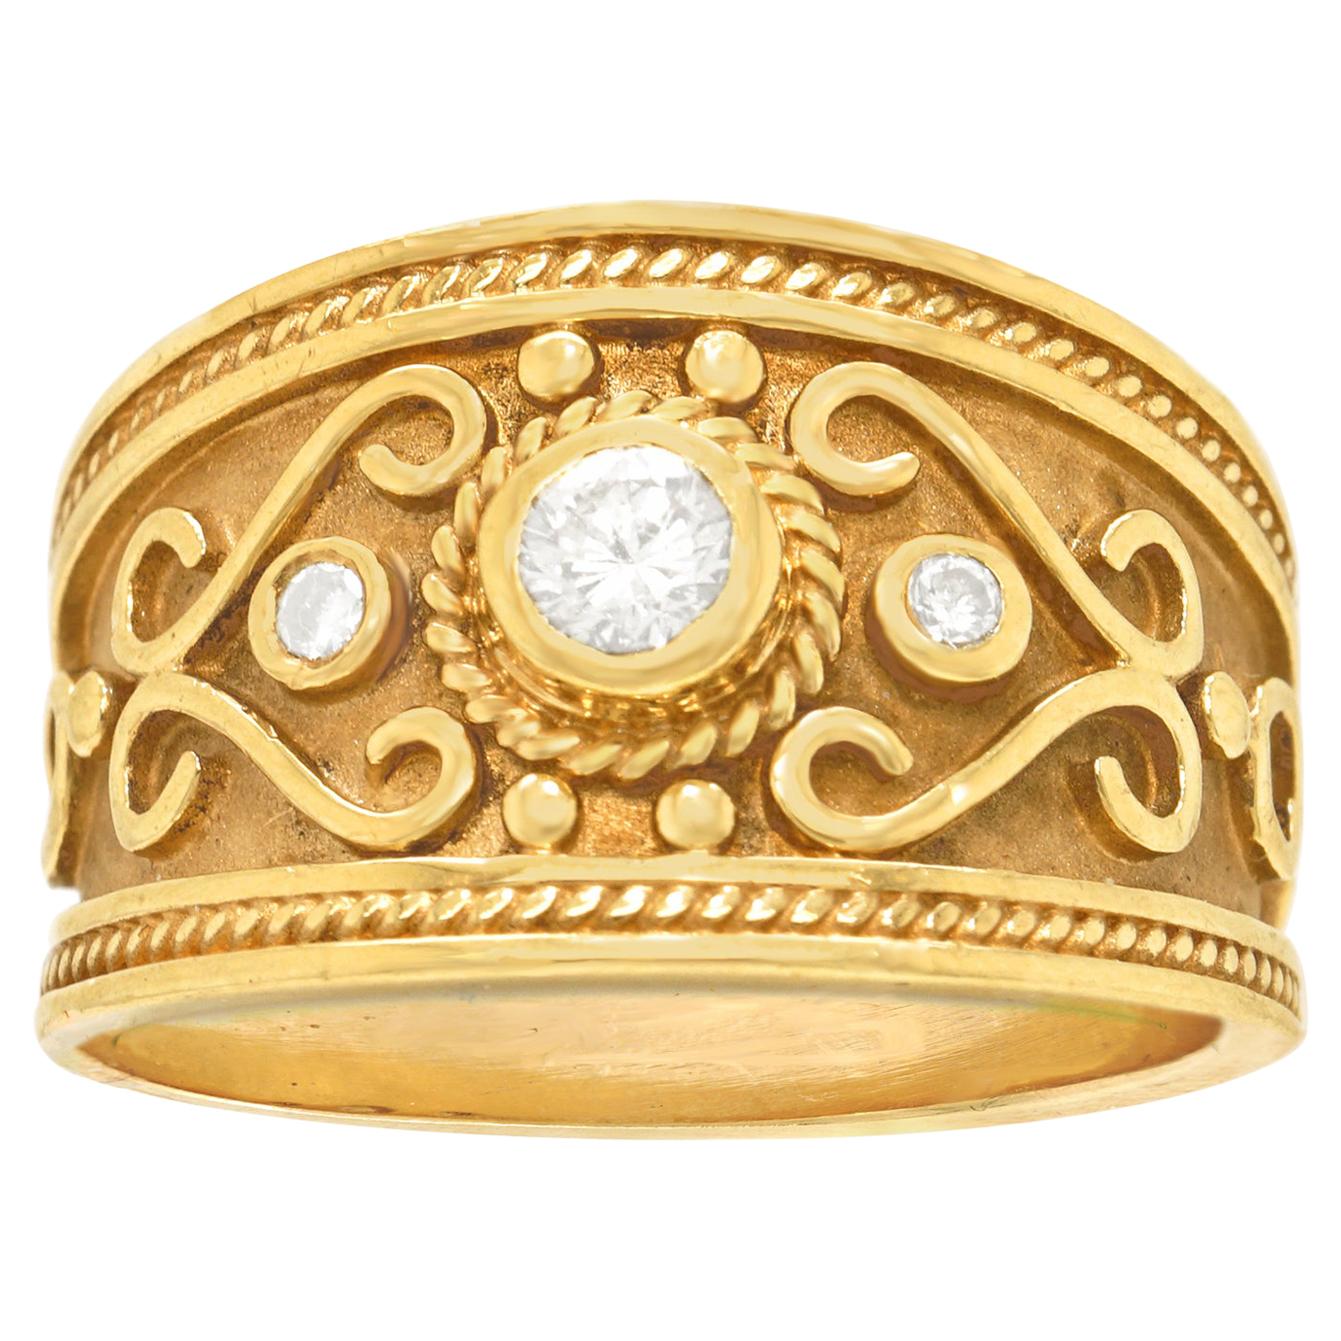 Le Vian Renaissance Revival Diamond Set Gold Ring